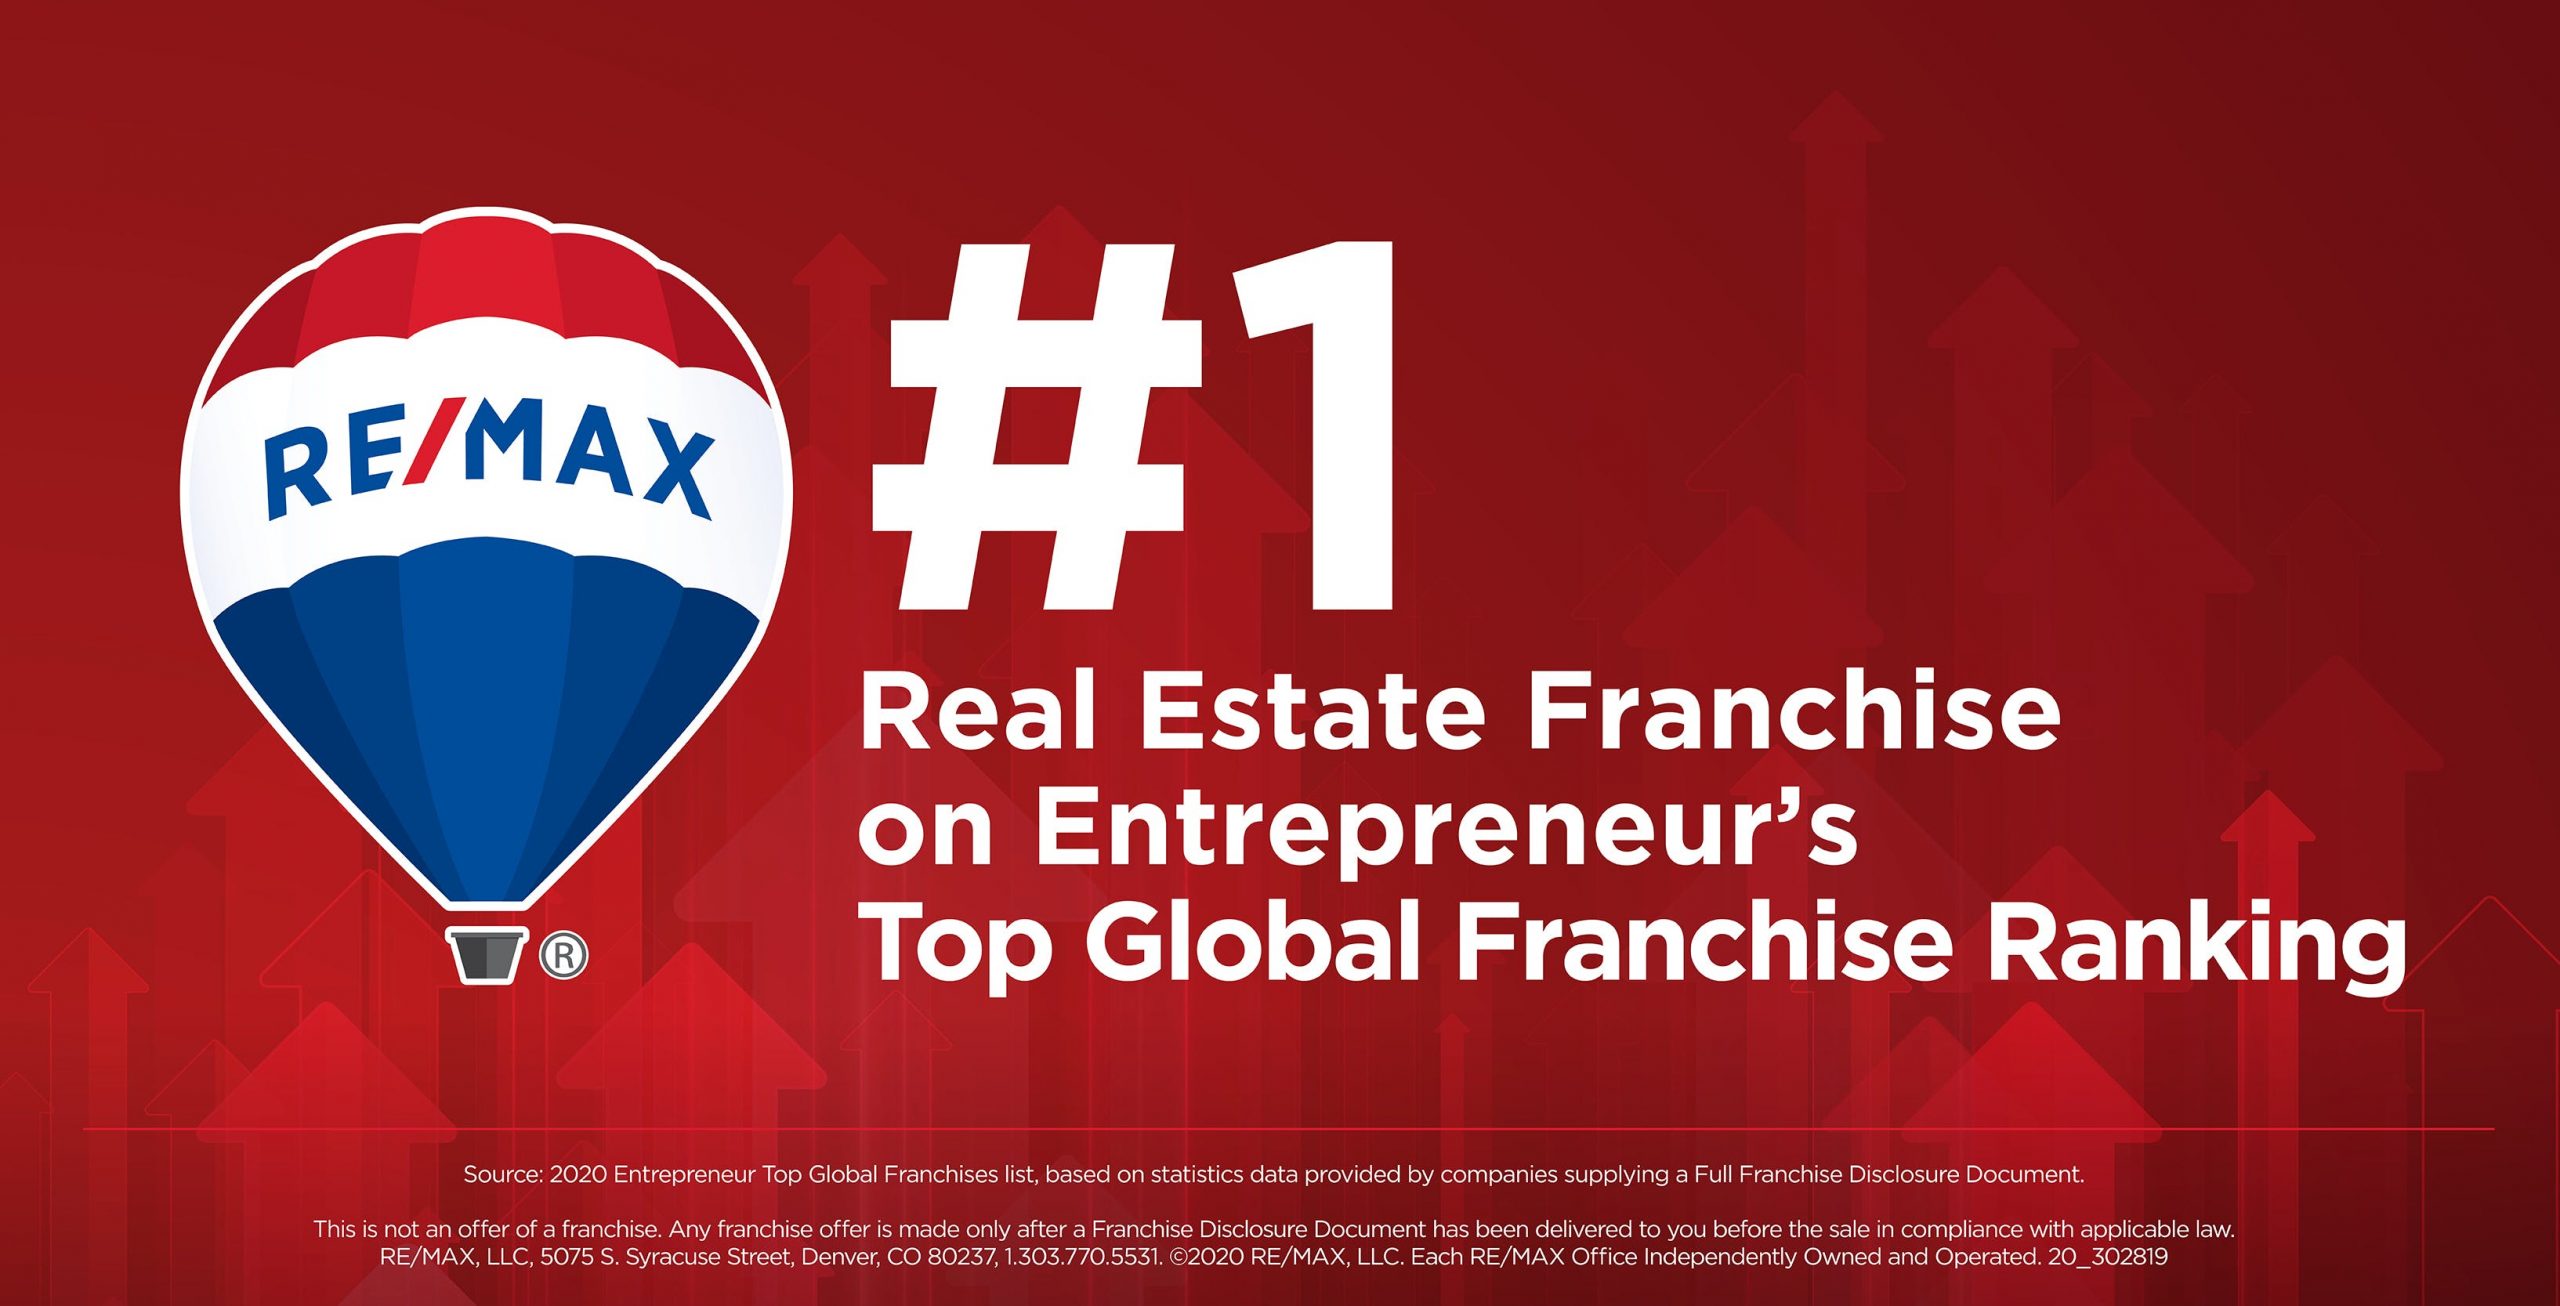 RE/MAX es la franquicia inmobiliaria #1 en la lista de las mejores franquicias del mundo de la revista Entrepreneur